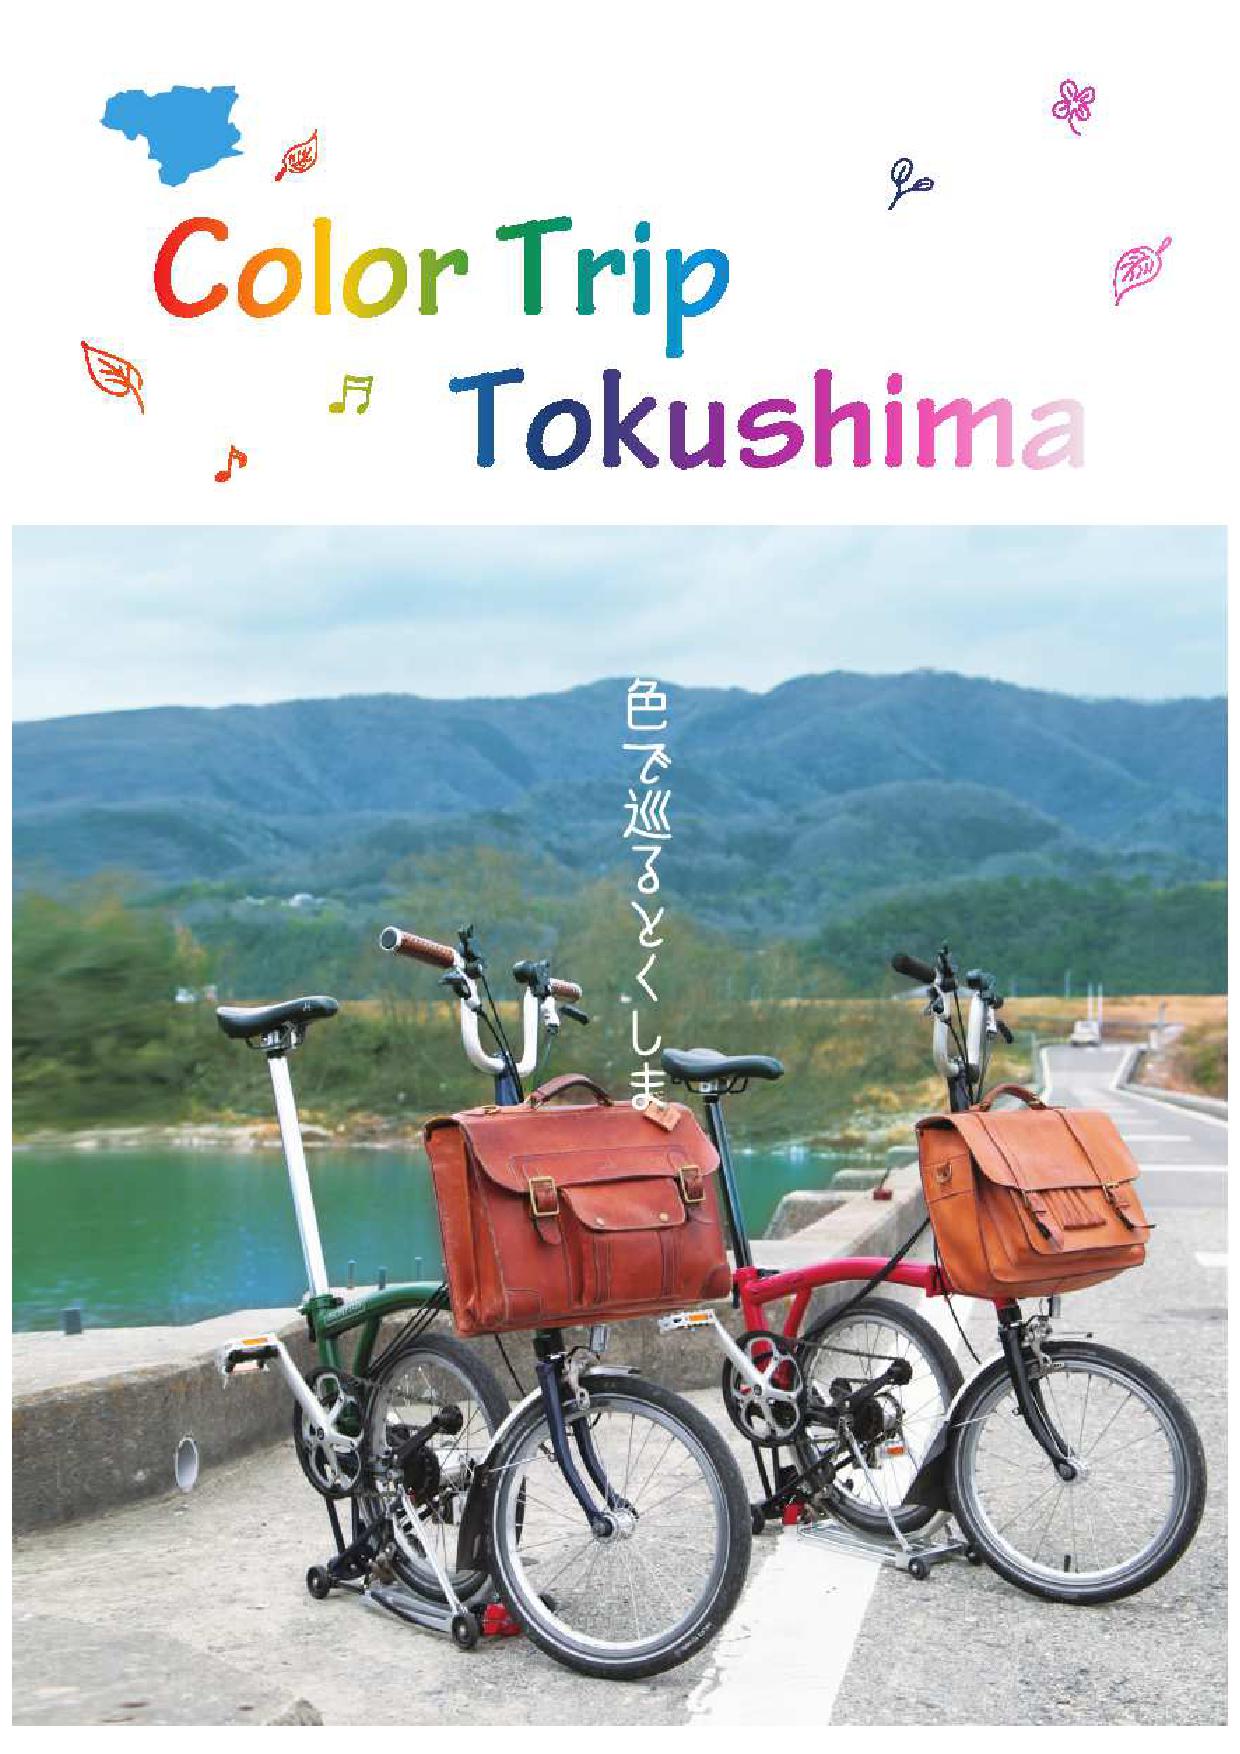 徳島県観光電子パンフレット「ColorTripTokushima」を発行しました